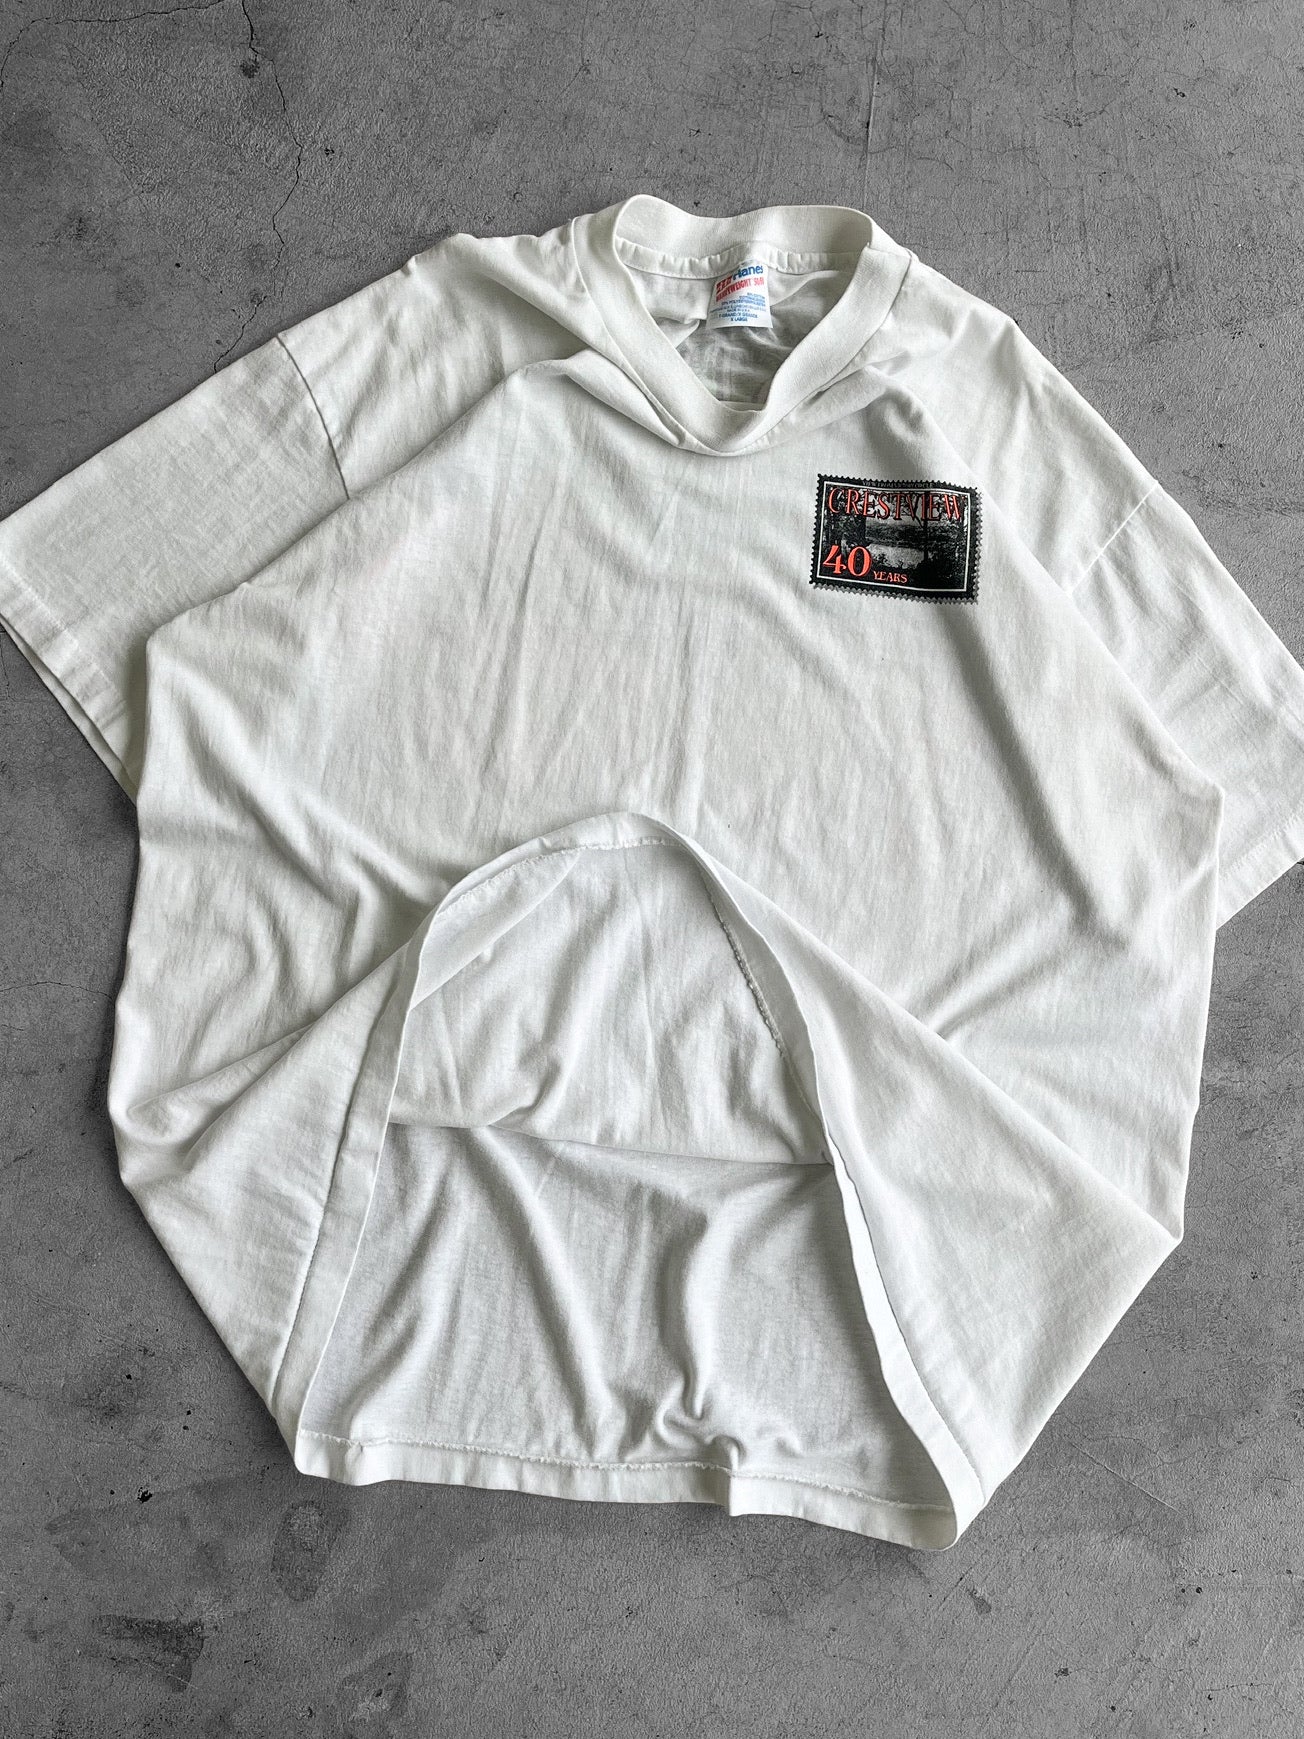 90’s Corbett Oregon Wilderness Shirt - XL